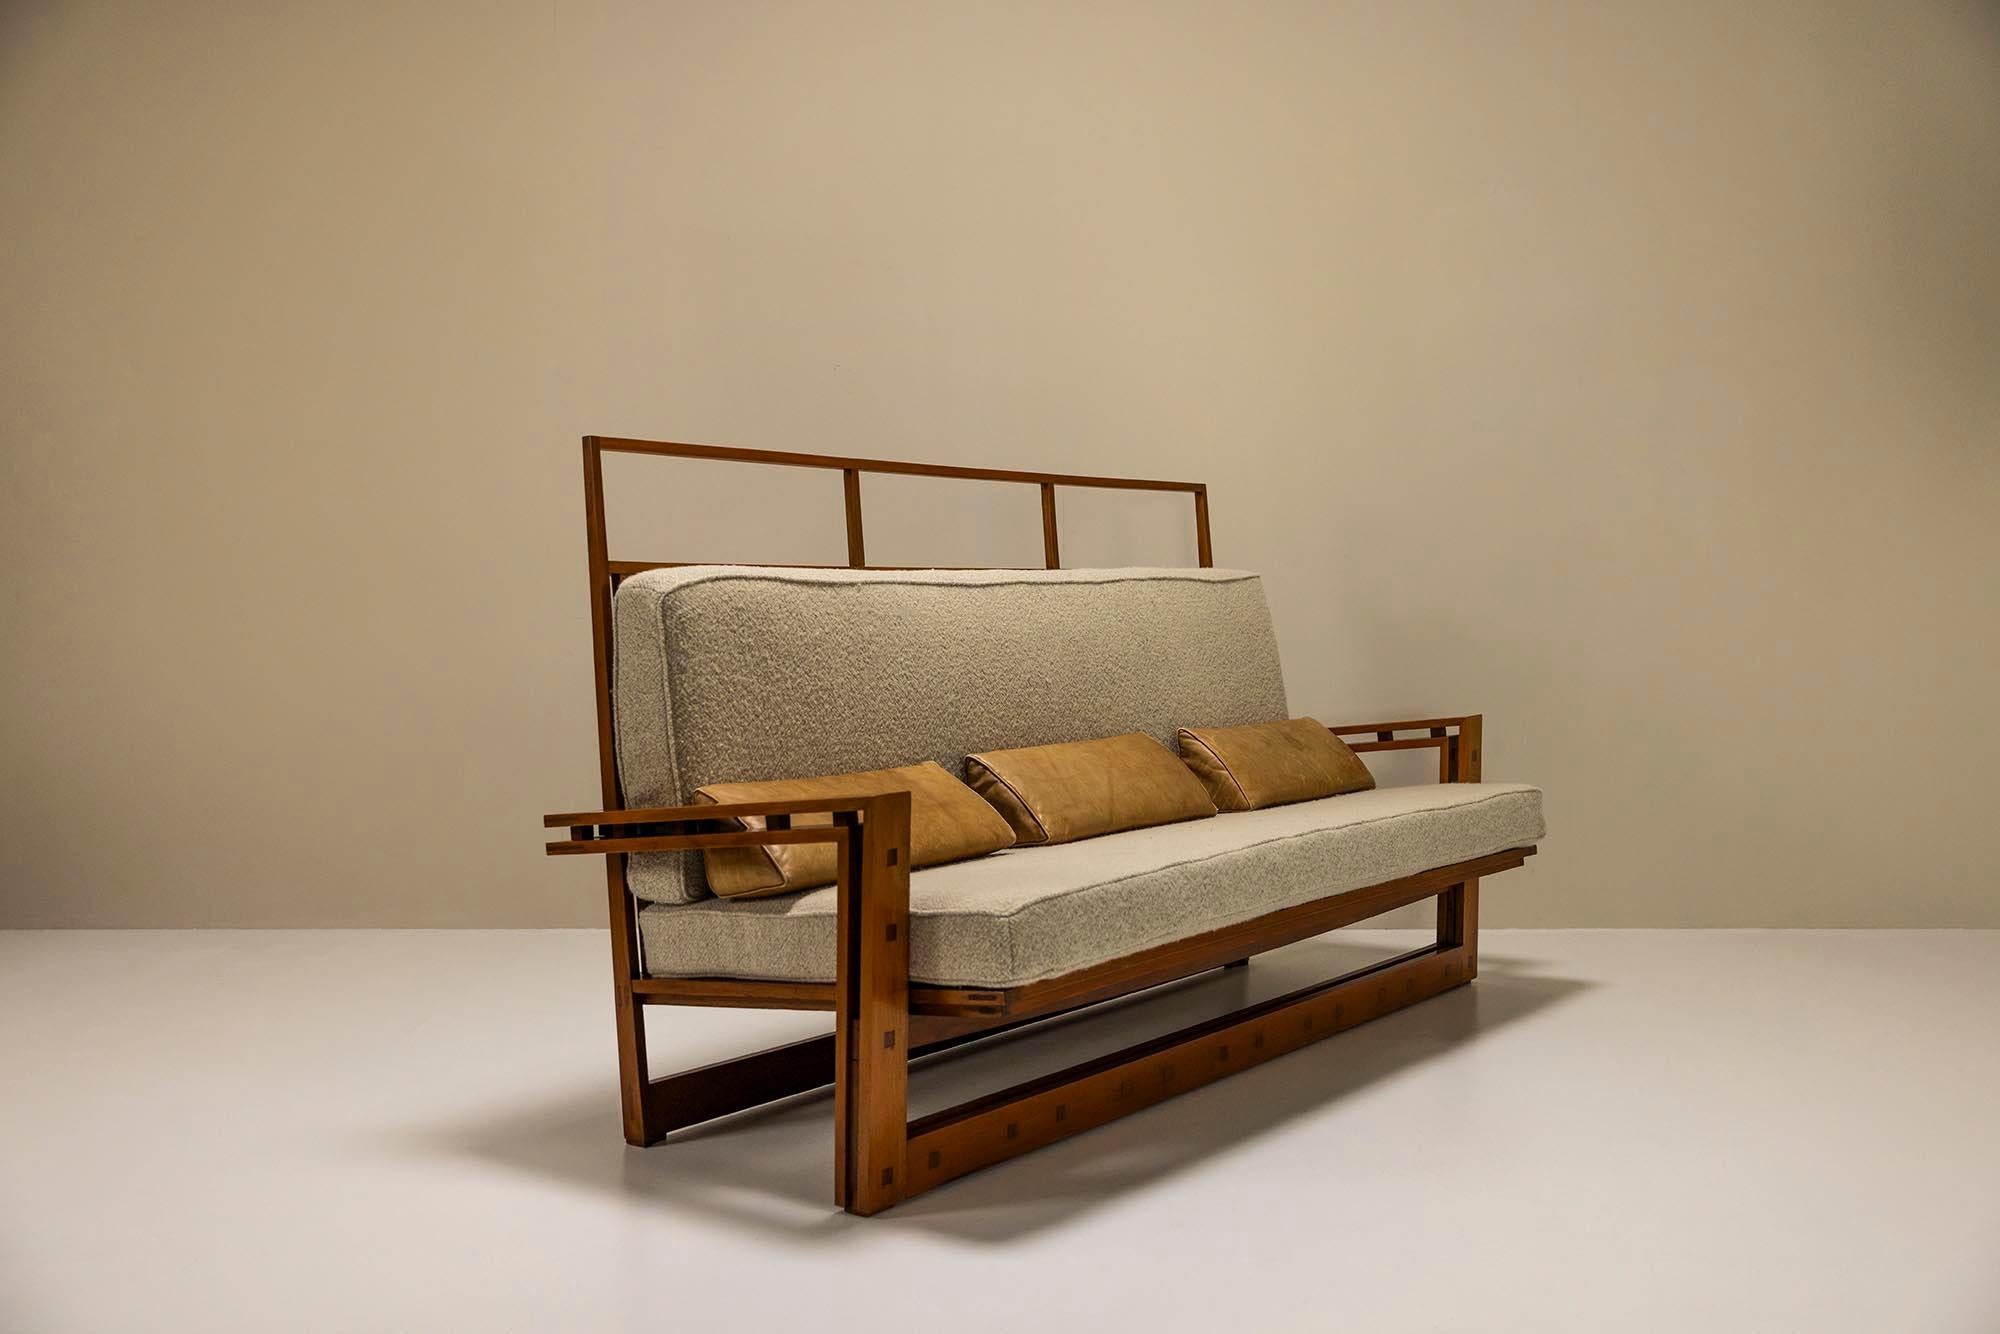 Dreisitzer-Sofa aus massiver Esche und Mansonia-Holz von Fausto Bontempi, Italien 1961